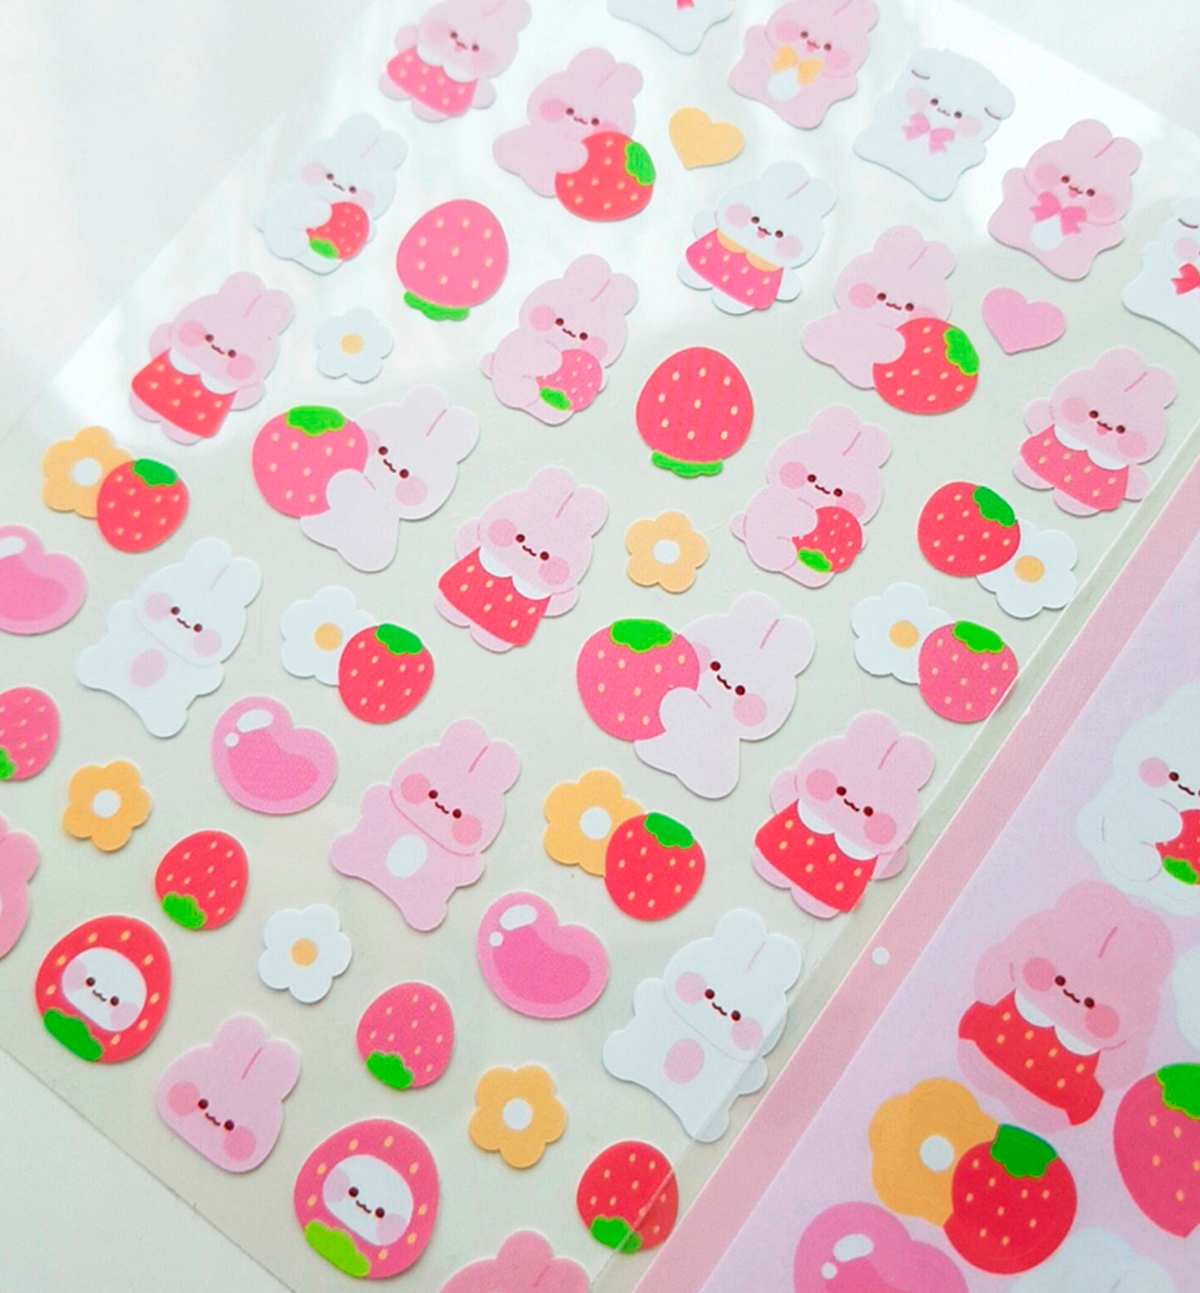 Strawberry Bunny Sticker